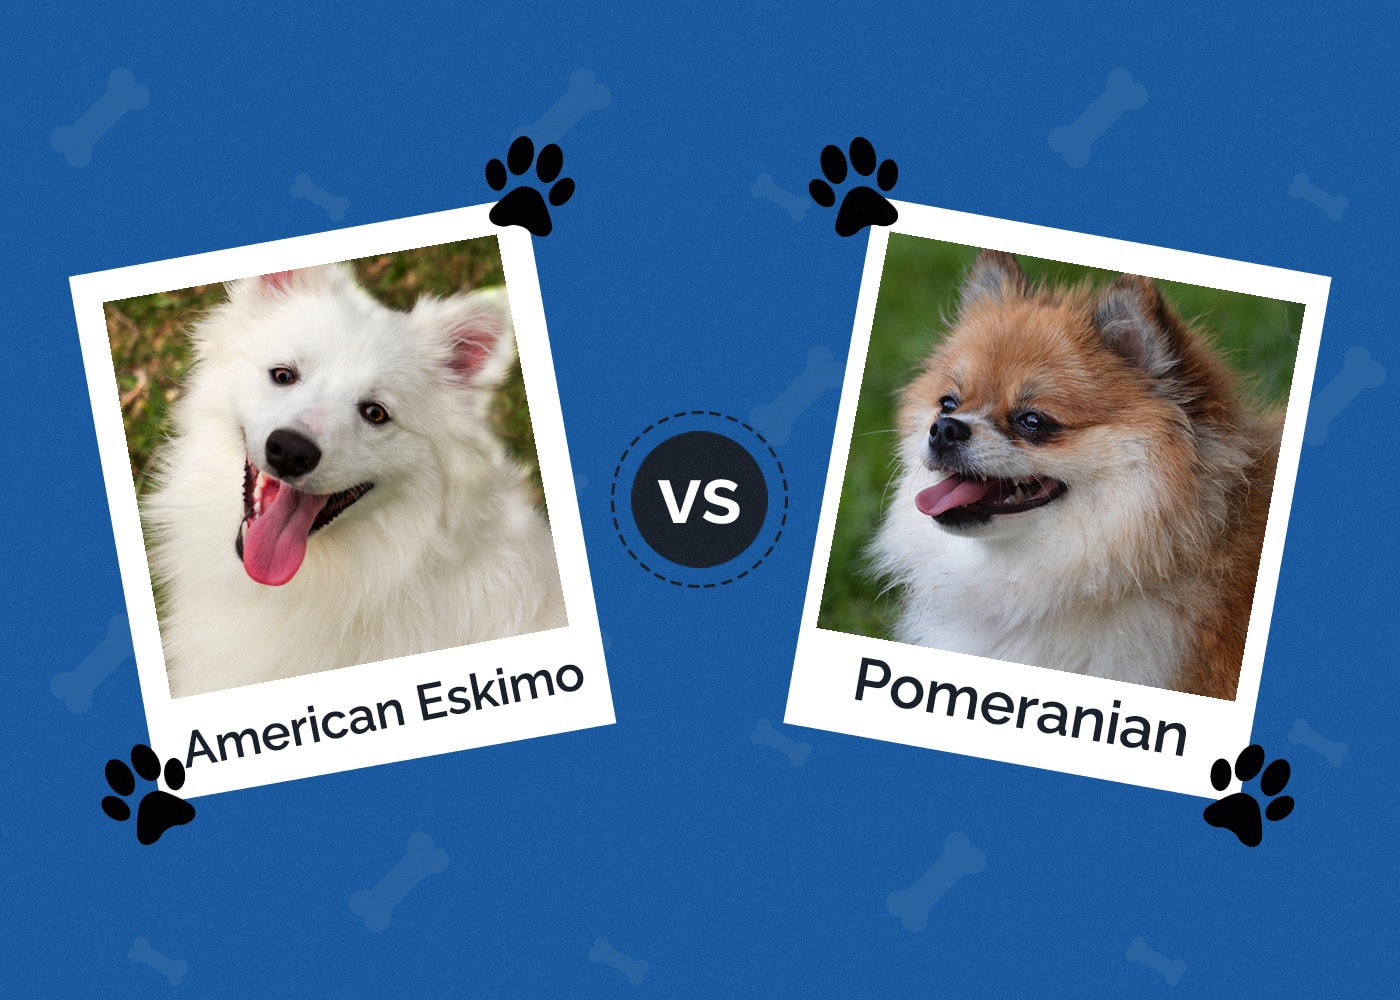 American Eskimo vs Pomeranian